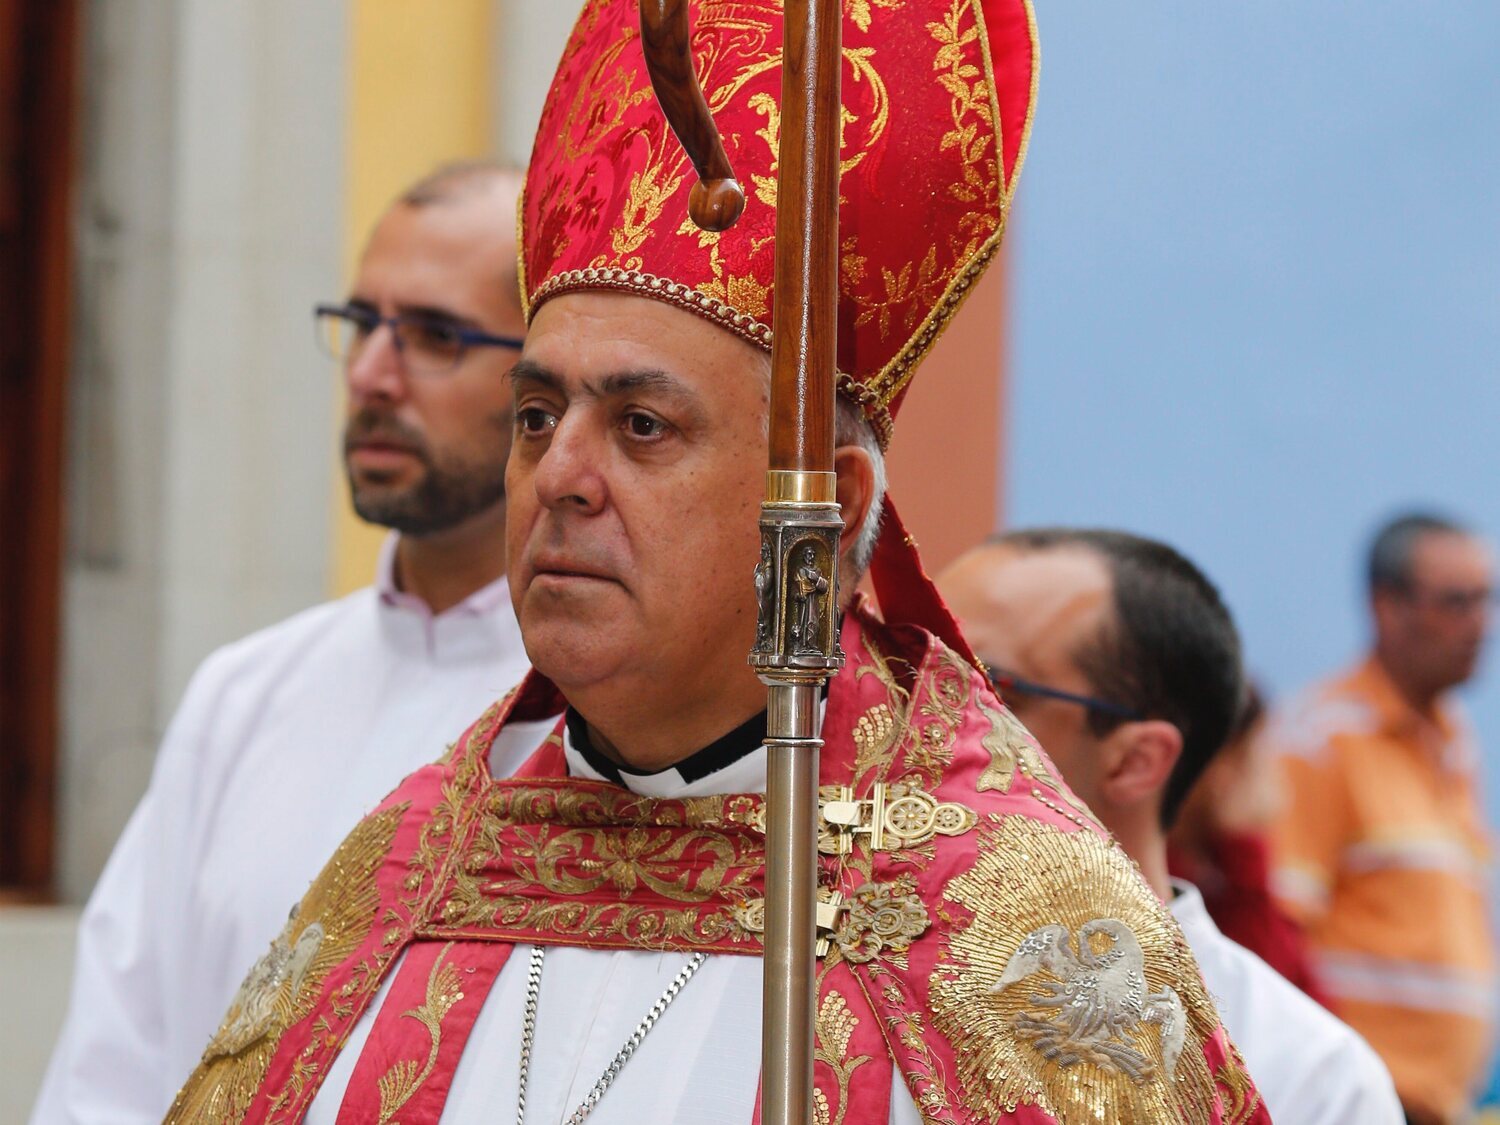 El obispo de Tenerife considera la homosexualidad un pecado mortal y la equipara con el alcoholismo